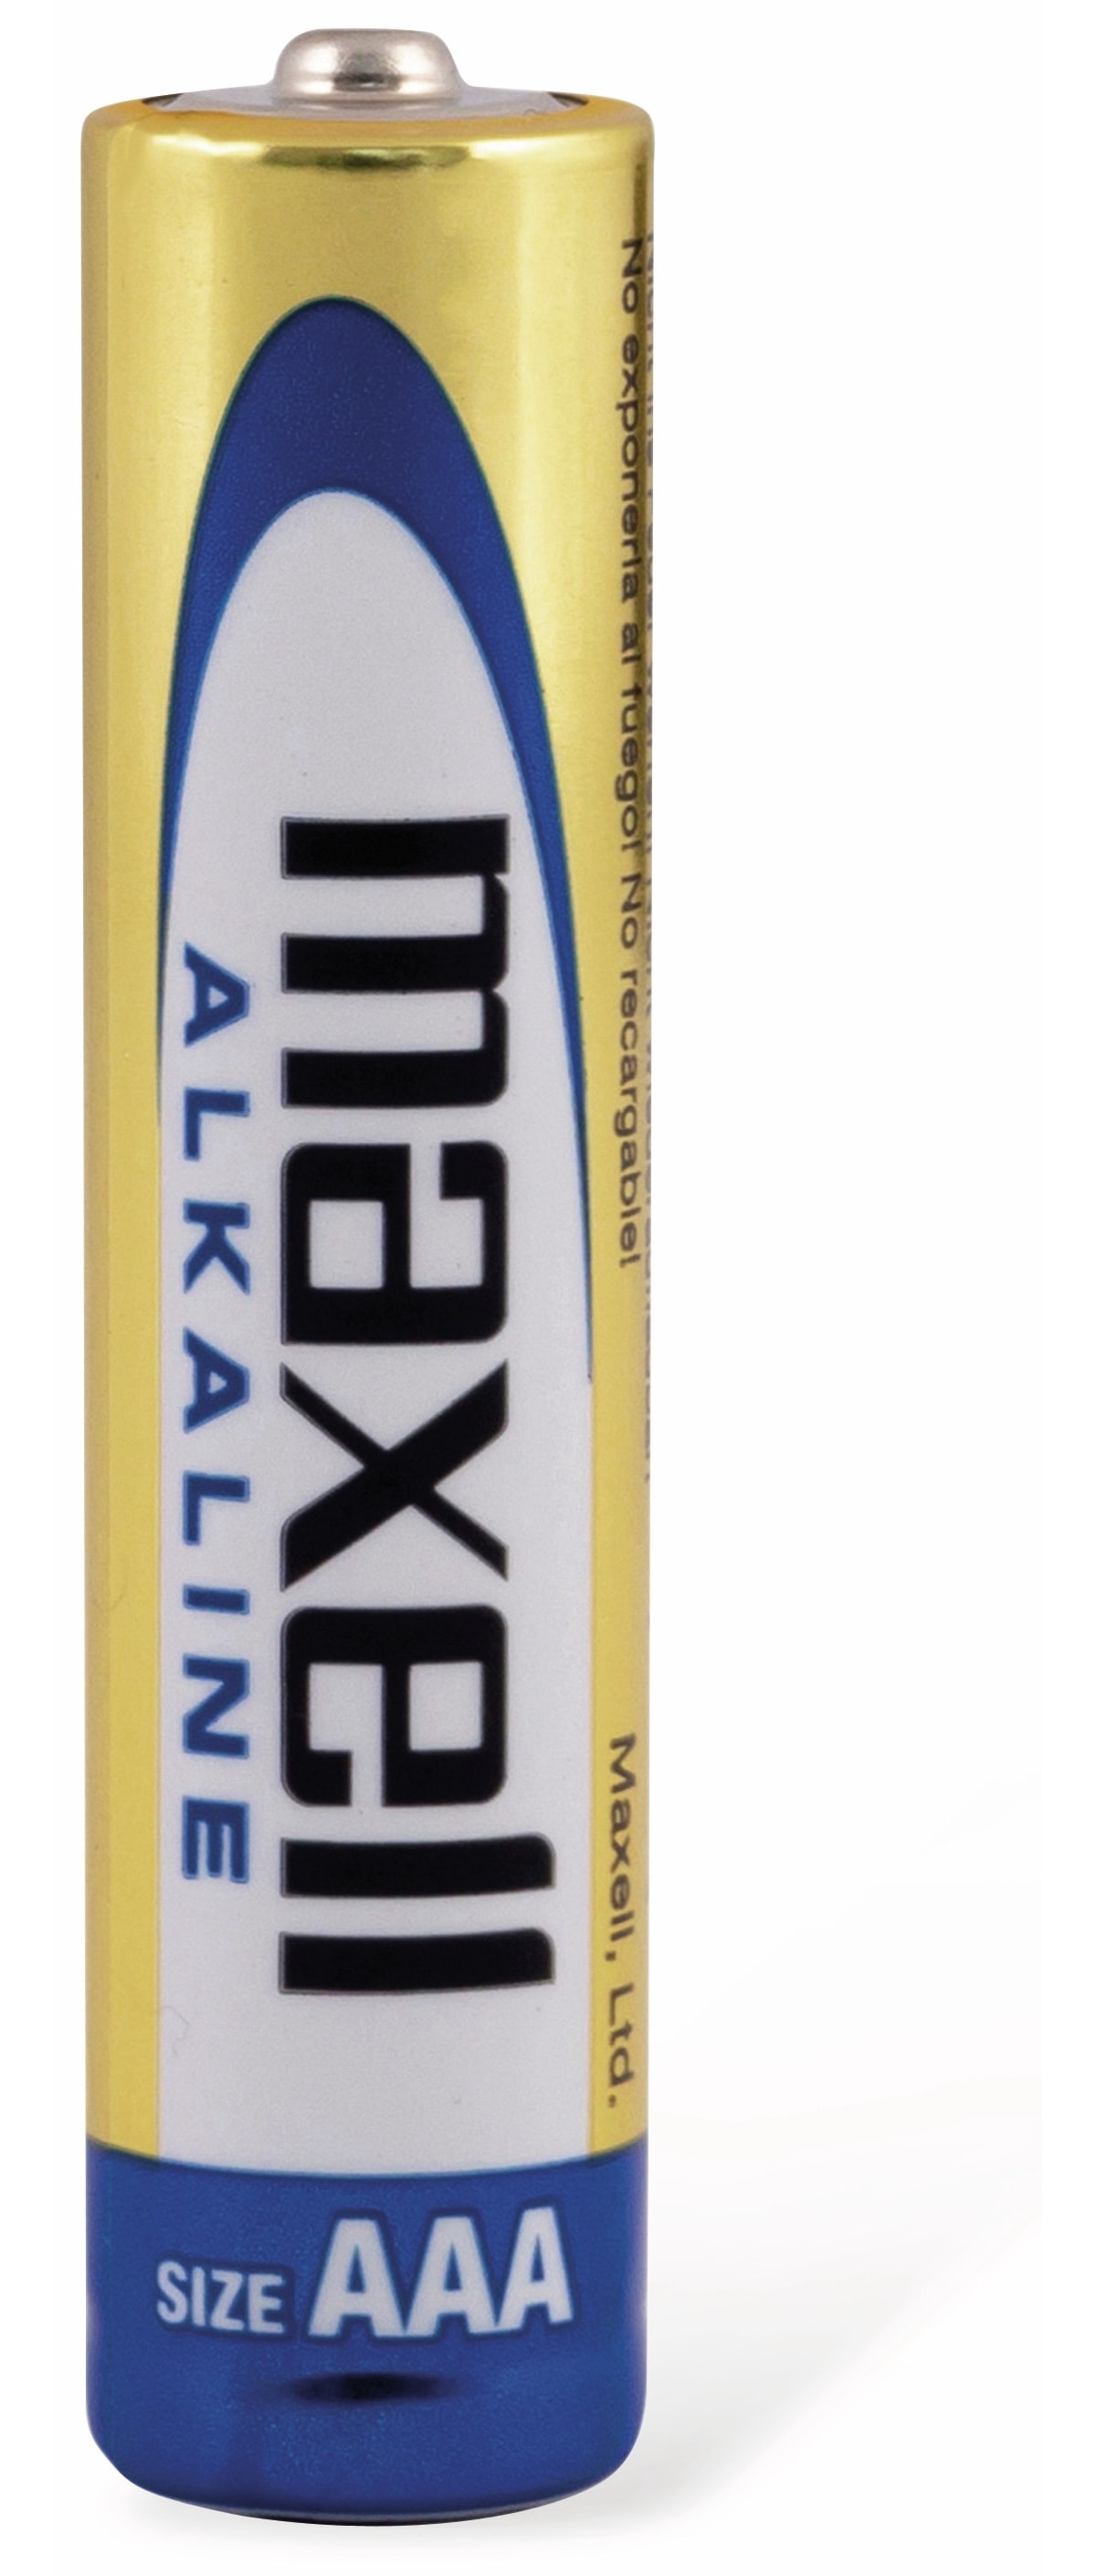 MAXELL Micro-Batterie Alkaline, AAA. LR03, 10 Stück